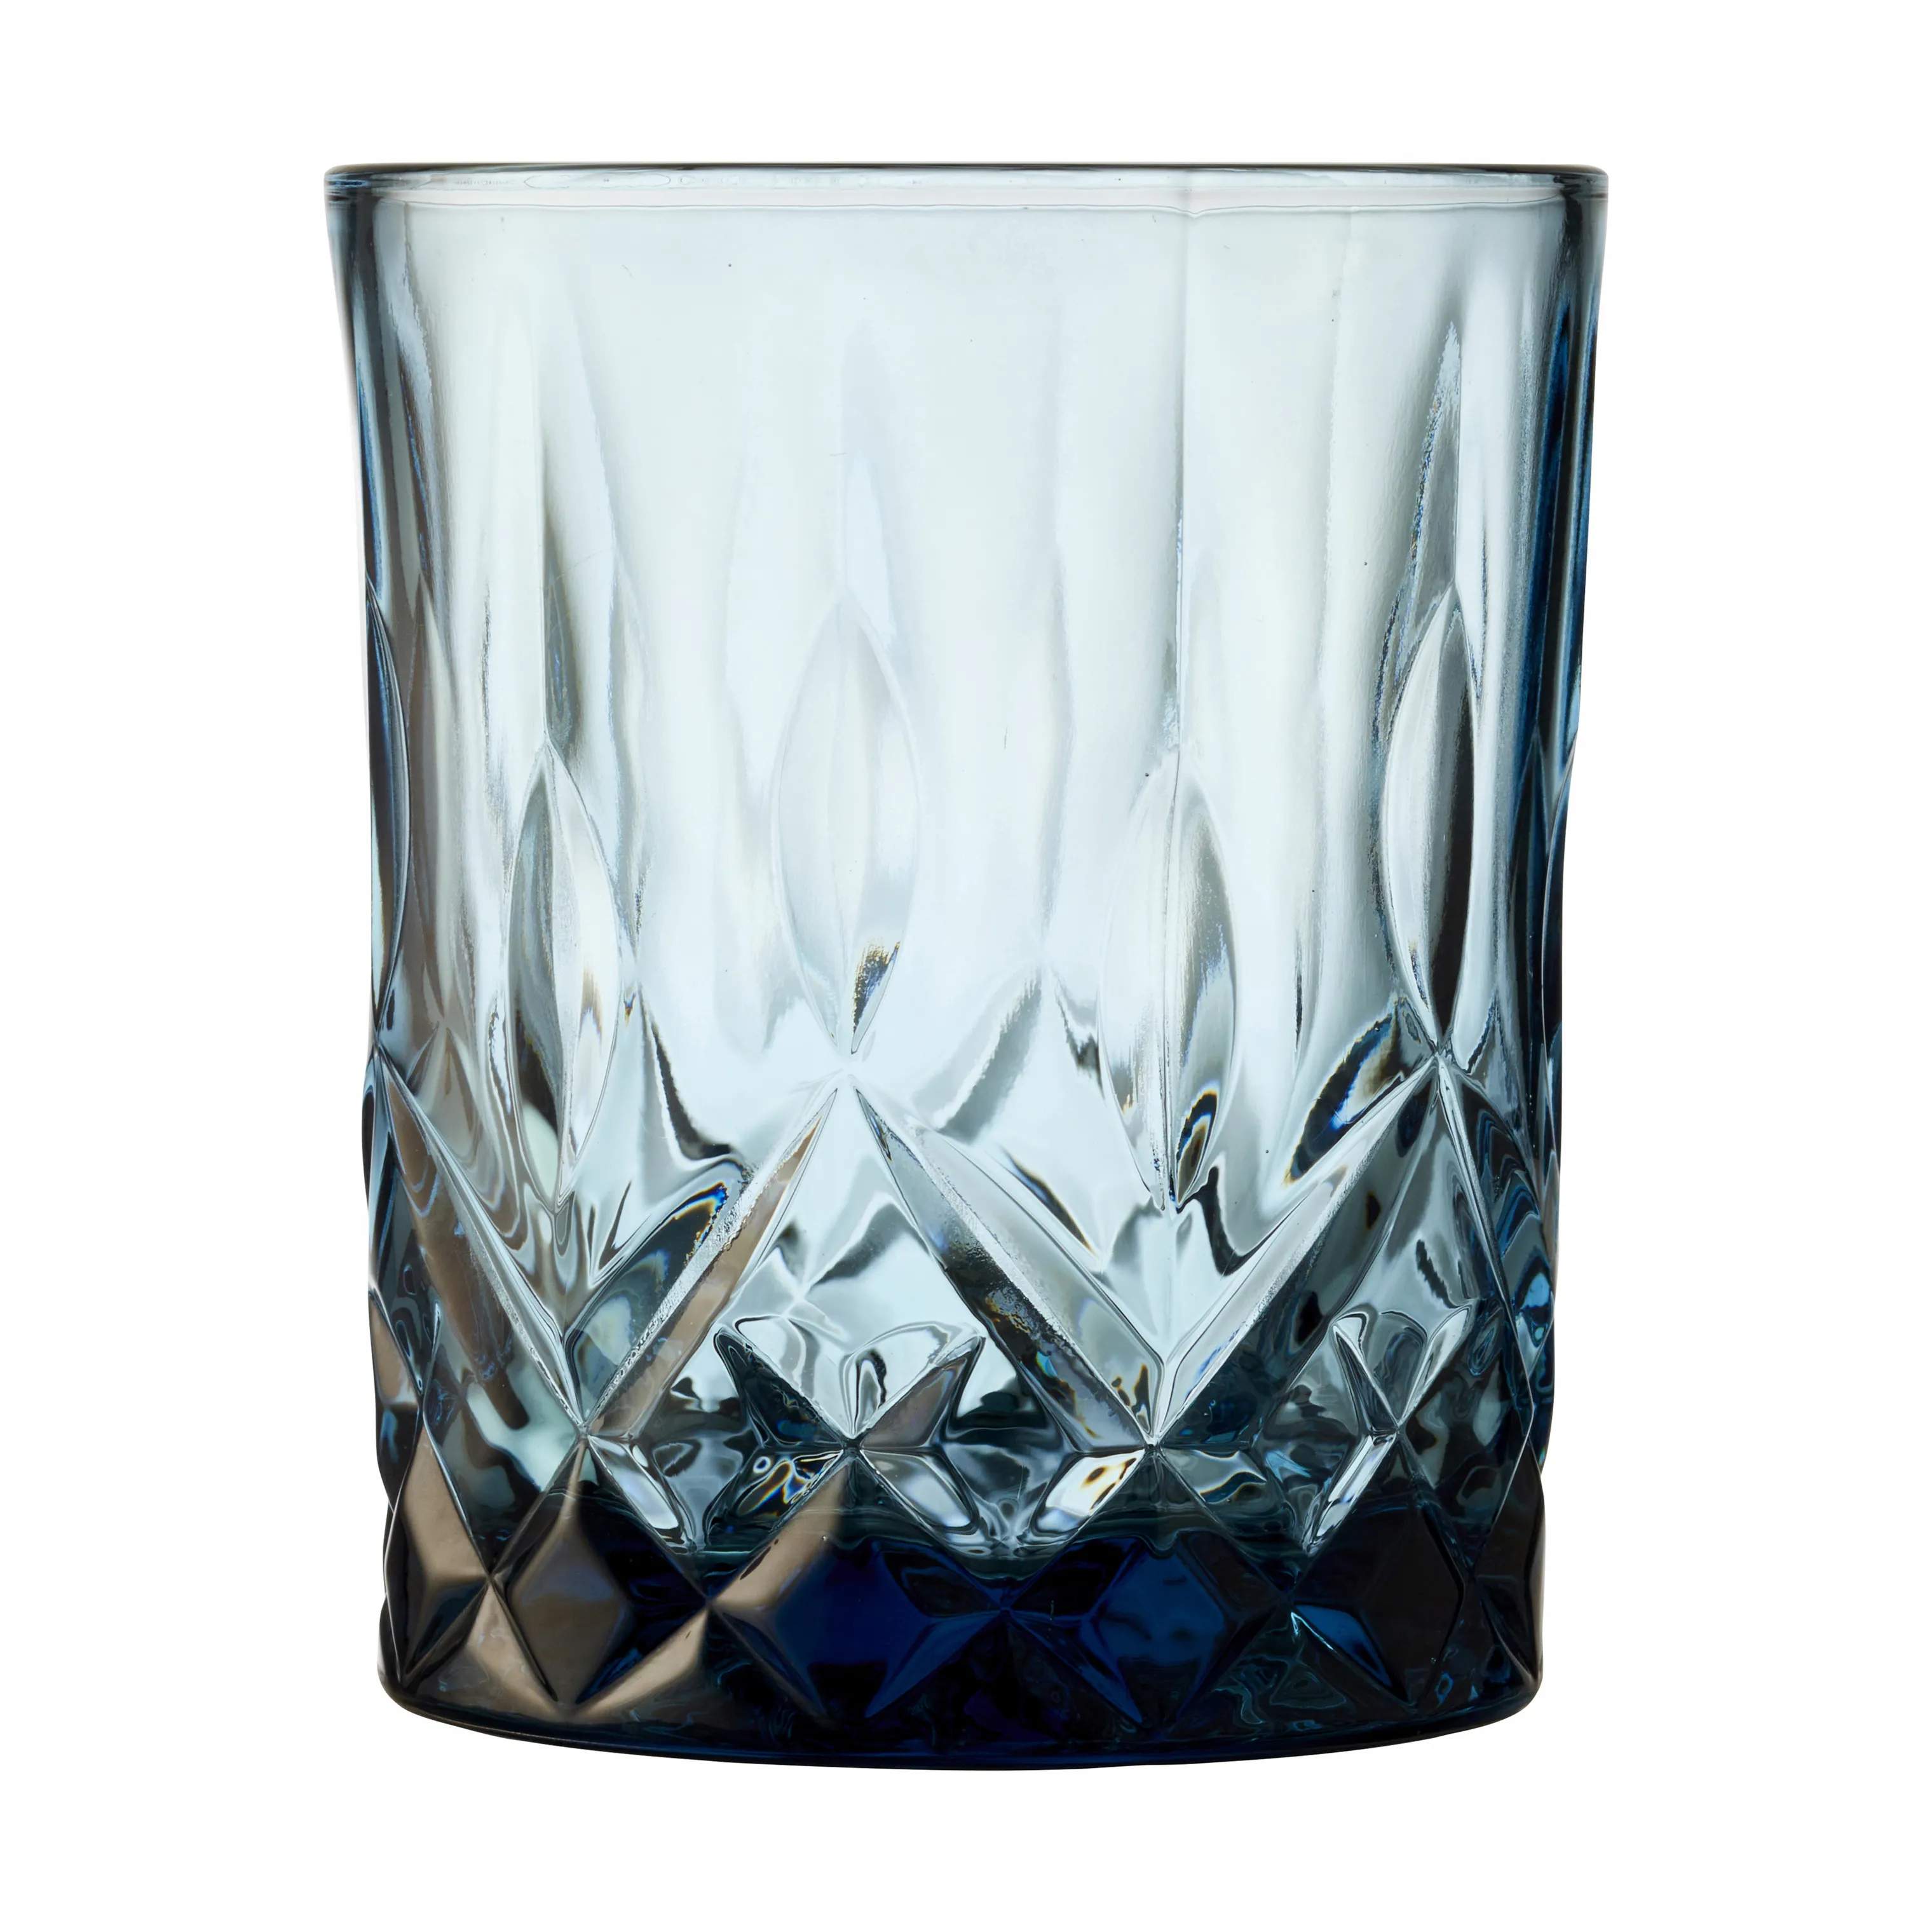 Sorrento Whiskyglas - 4 stk., blå, large